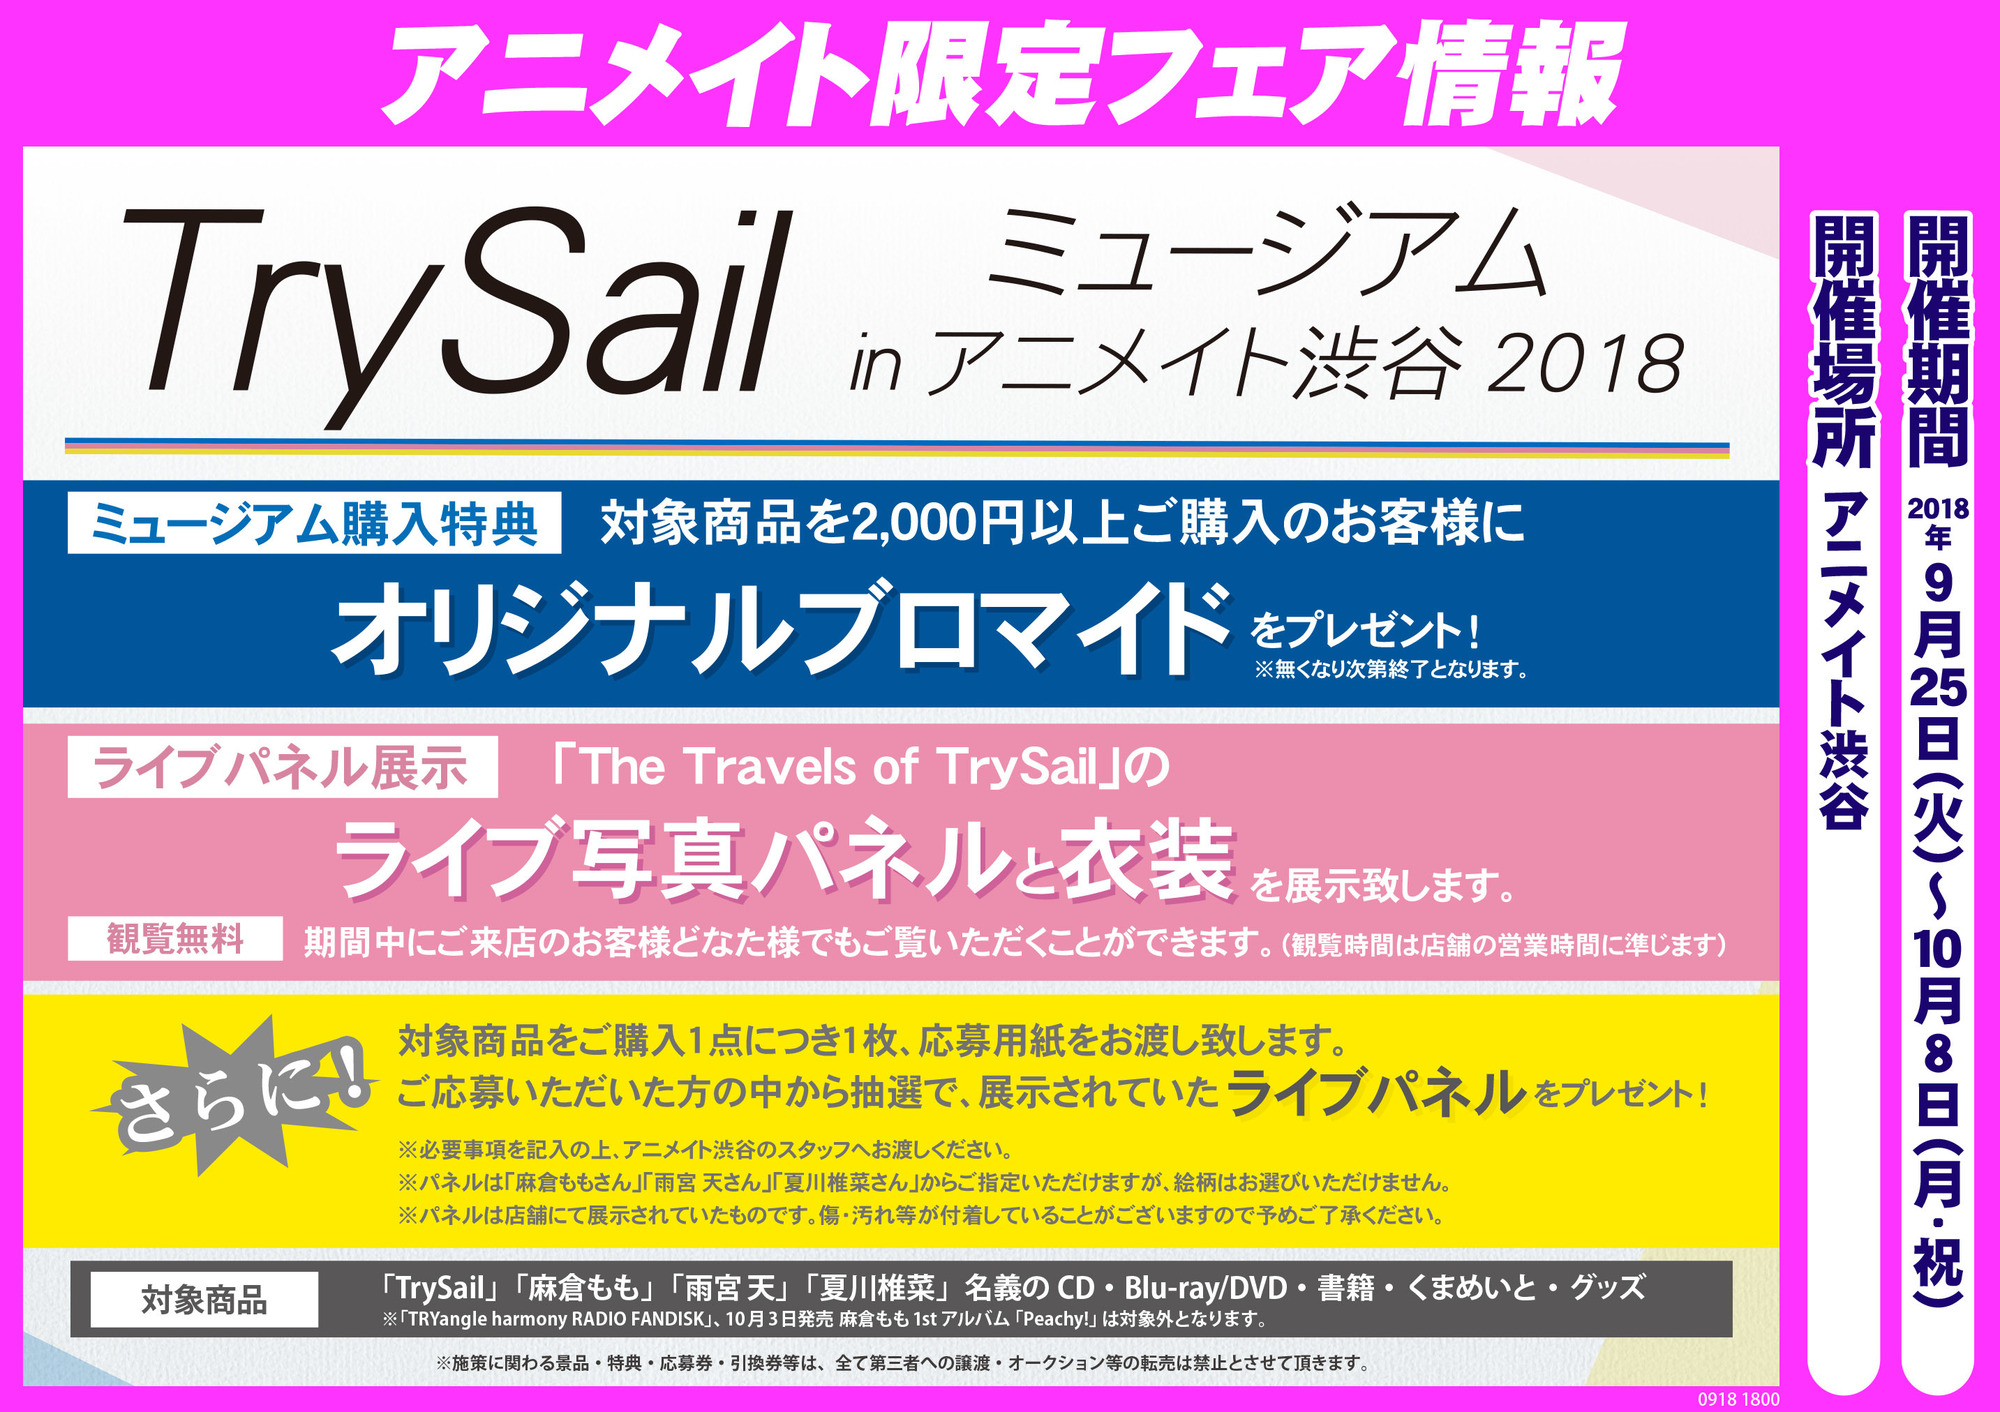 Trysailミュージアム Inアニメイト渋谷18 開催のご案内 Trysail Portal Square トライセイルポータルスクエア